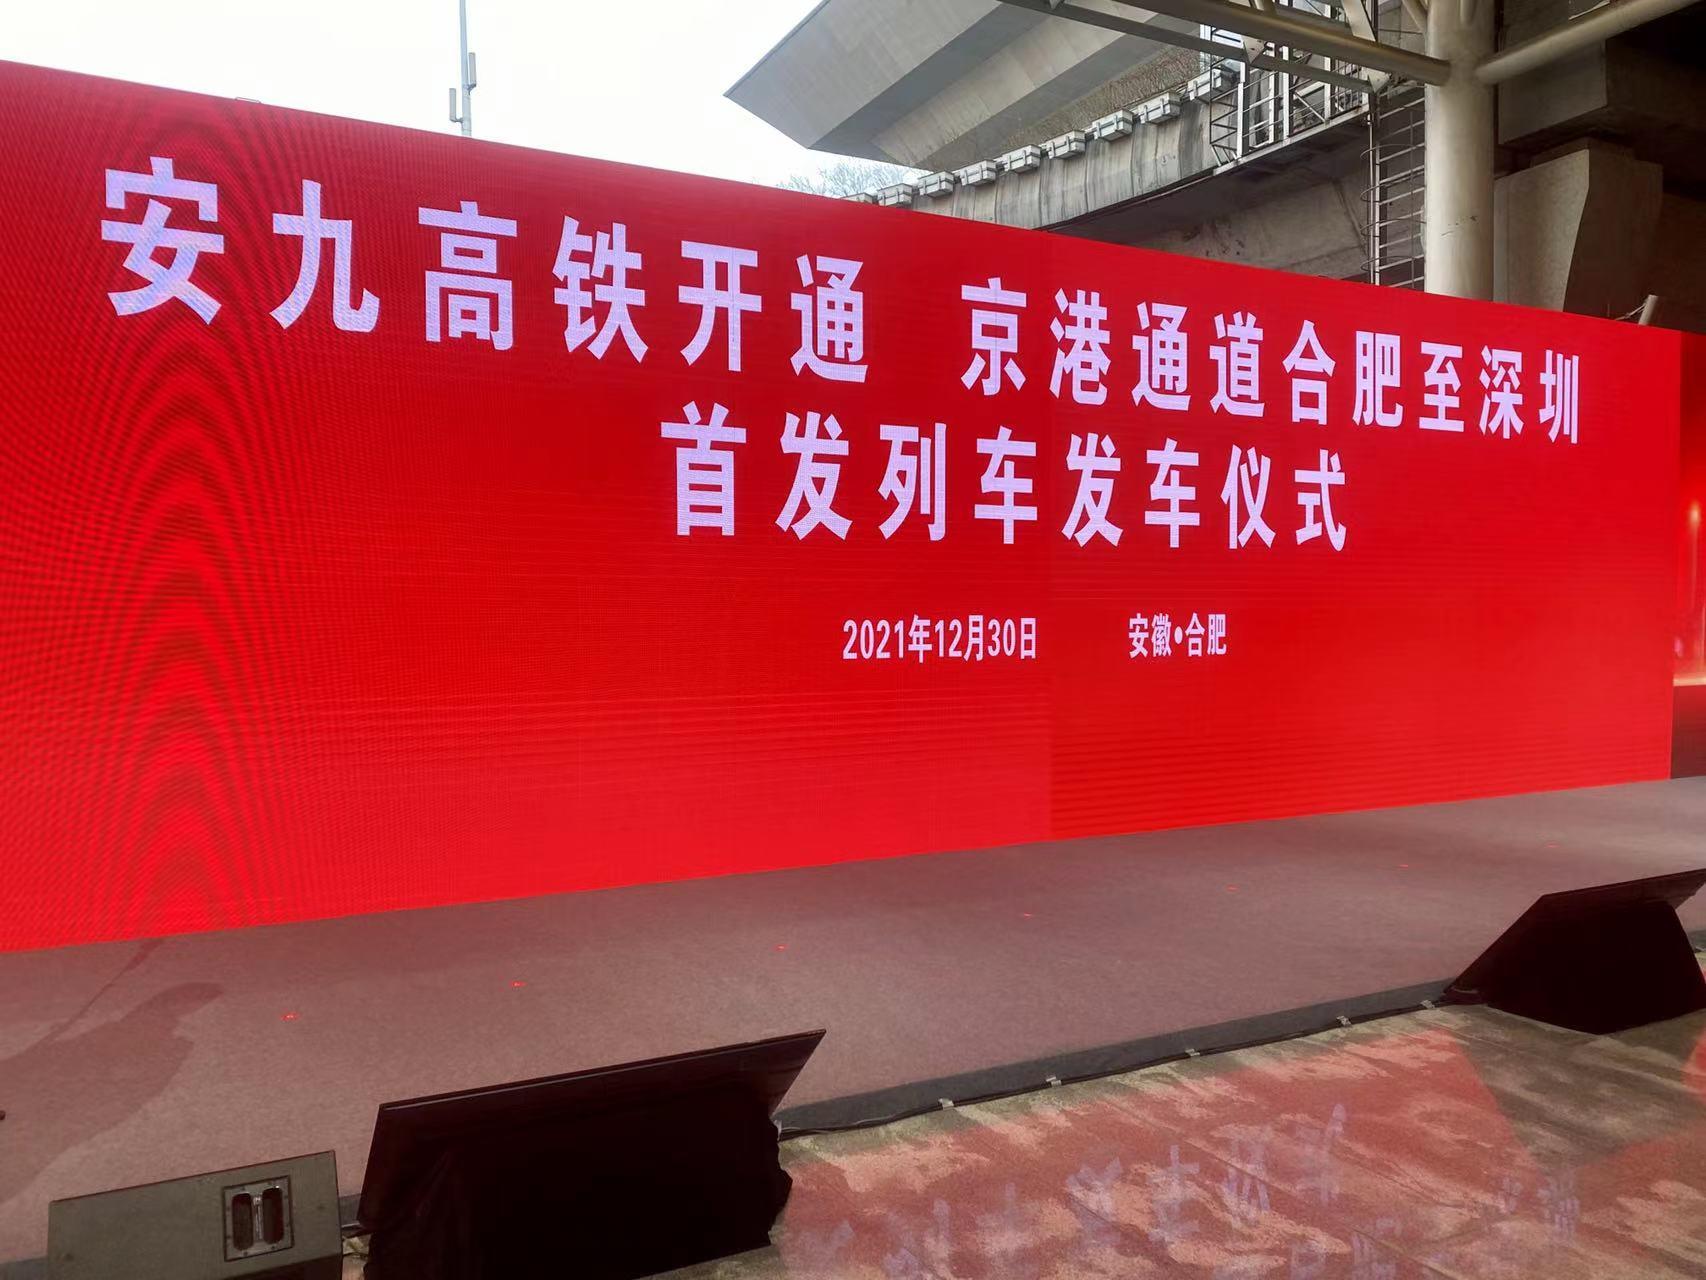 京港高铁安庆至九江段正式开通运营